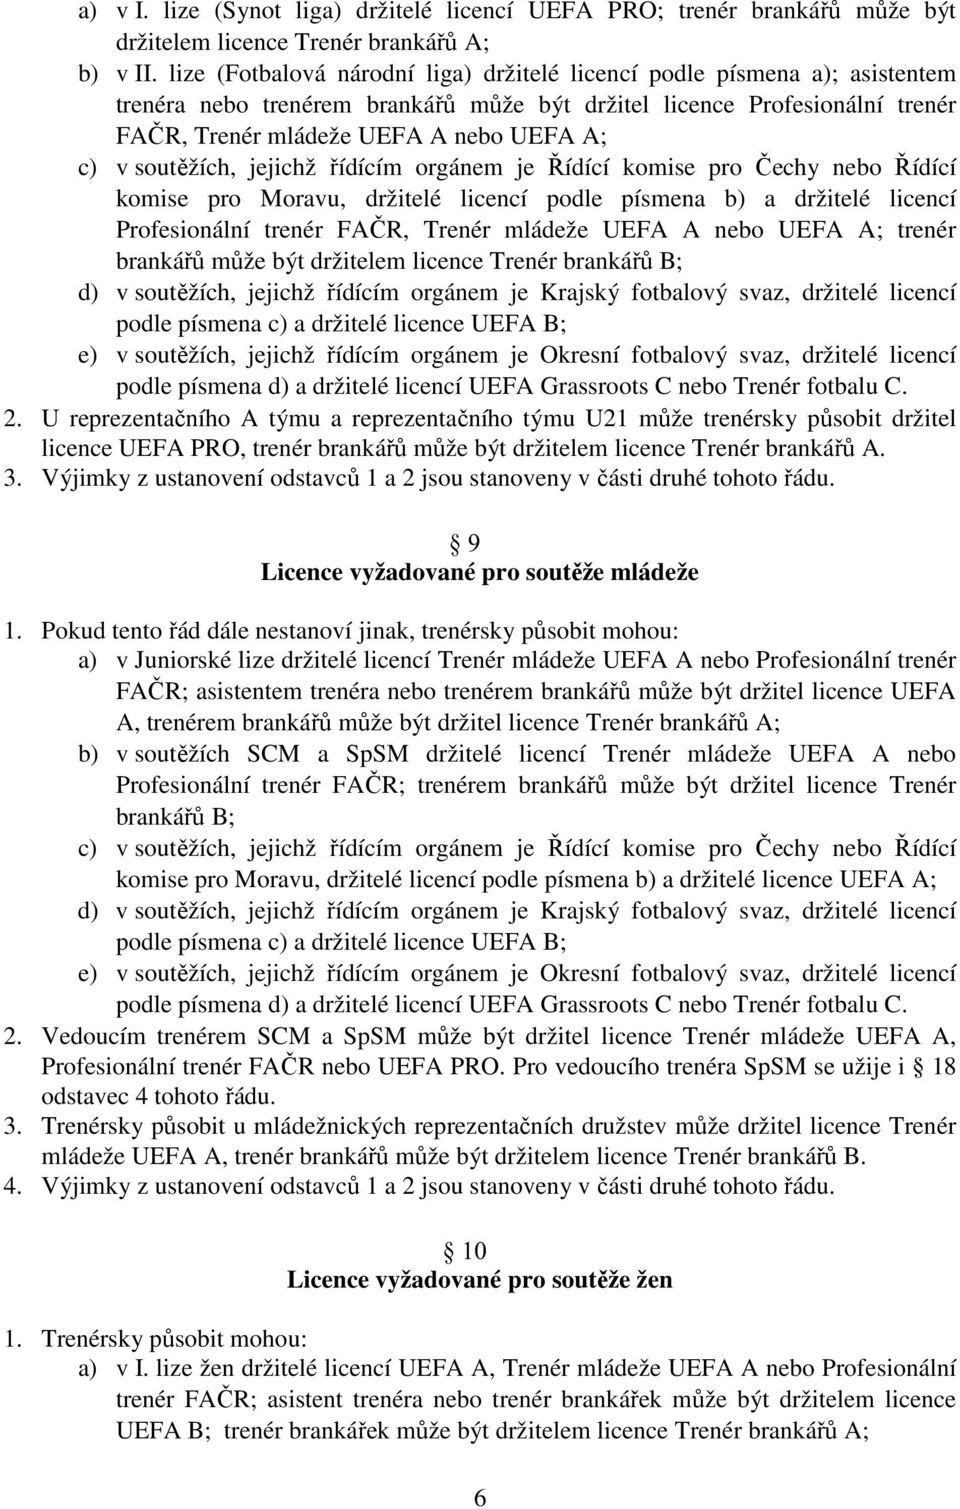 soutěžích, jejichž řídícím orgánem je Řídící komise pro Čechy nebo Řídící komise pro Moravu, držitelé licencí podle písmena b) a držitelé licencí Profesionální trenér FAČR, Trenér mládeže UEFA A nebo